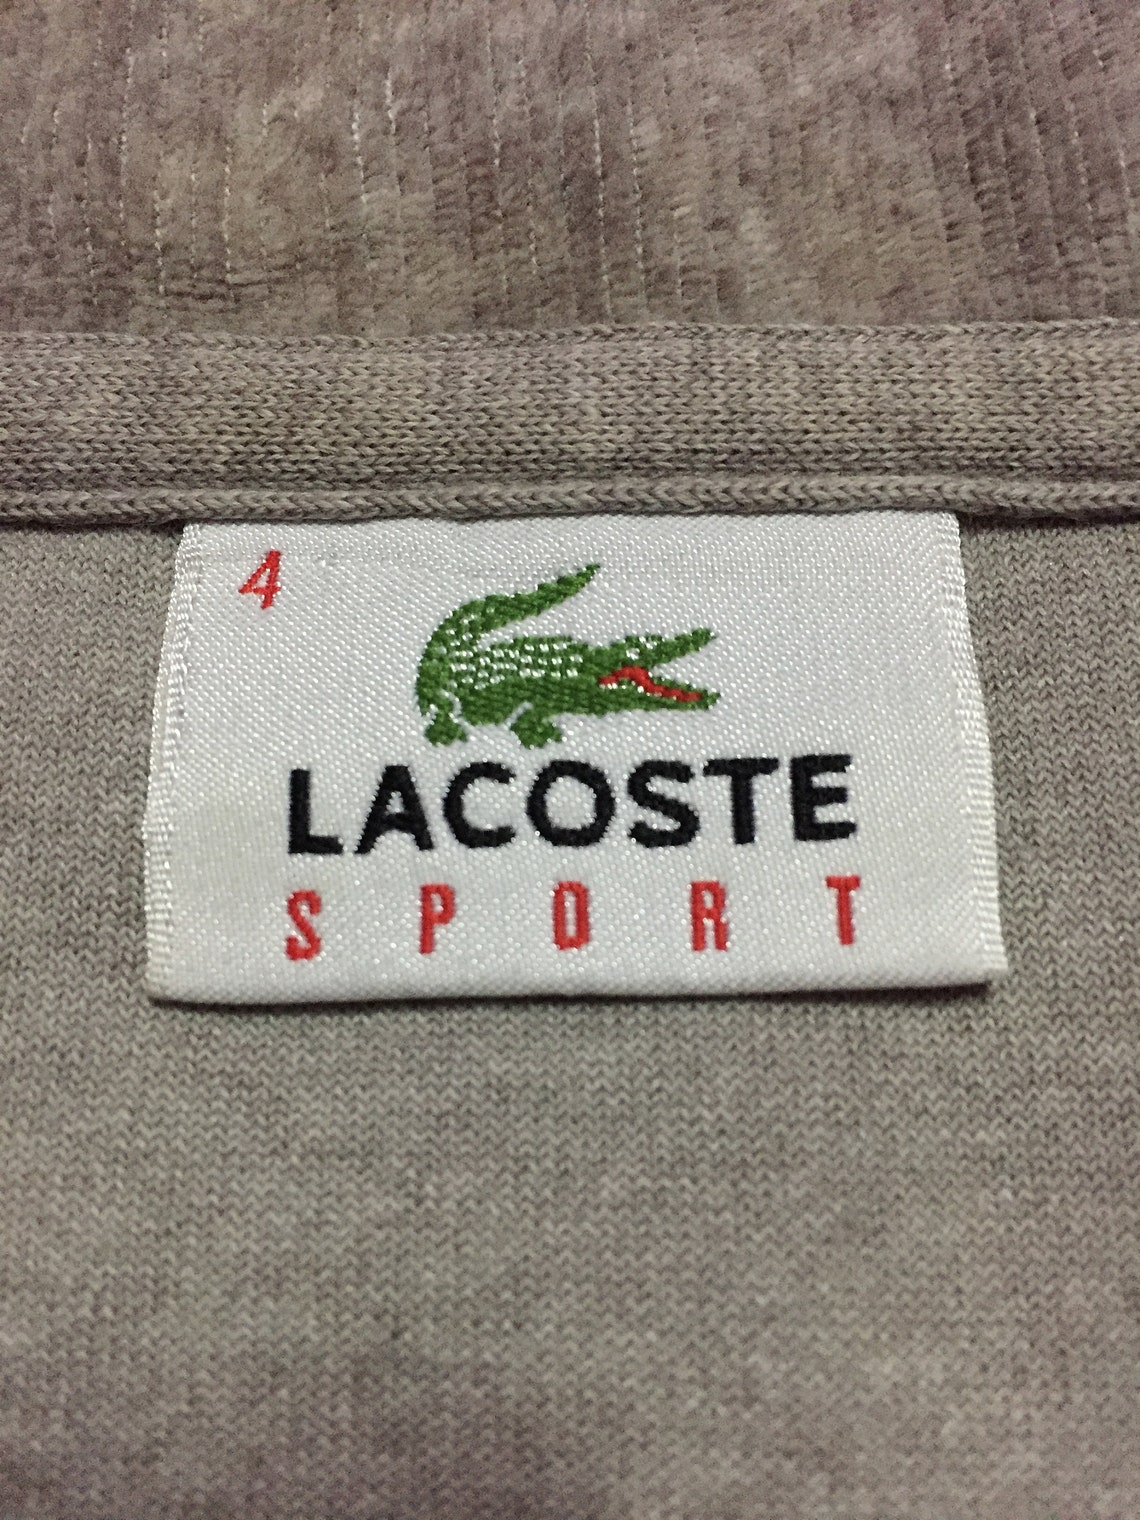 Lacoste Sport Fleece Sweatshirts | Etsy